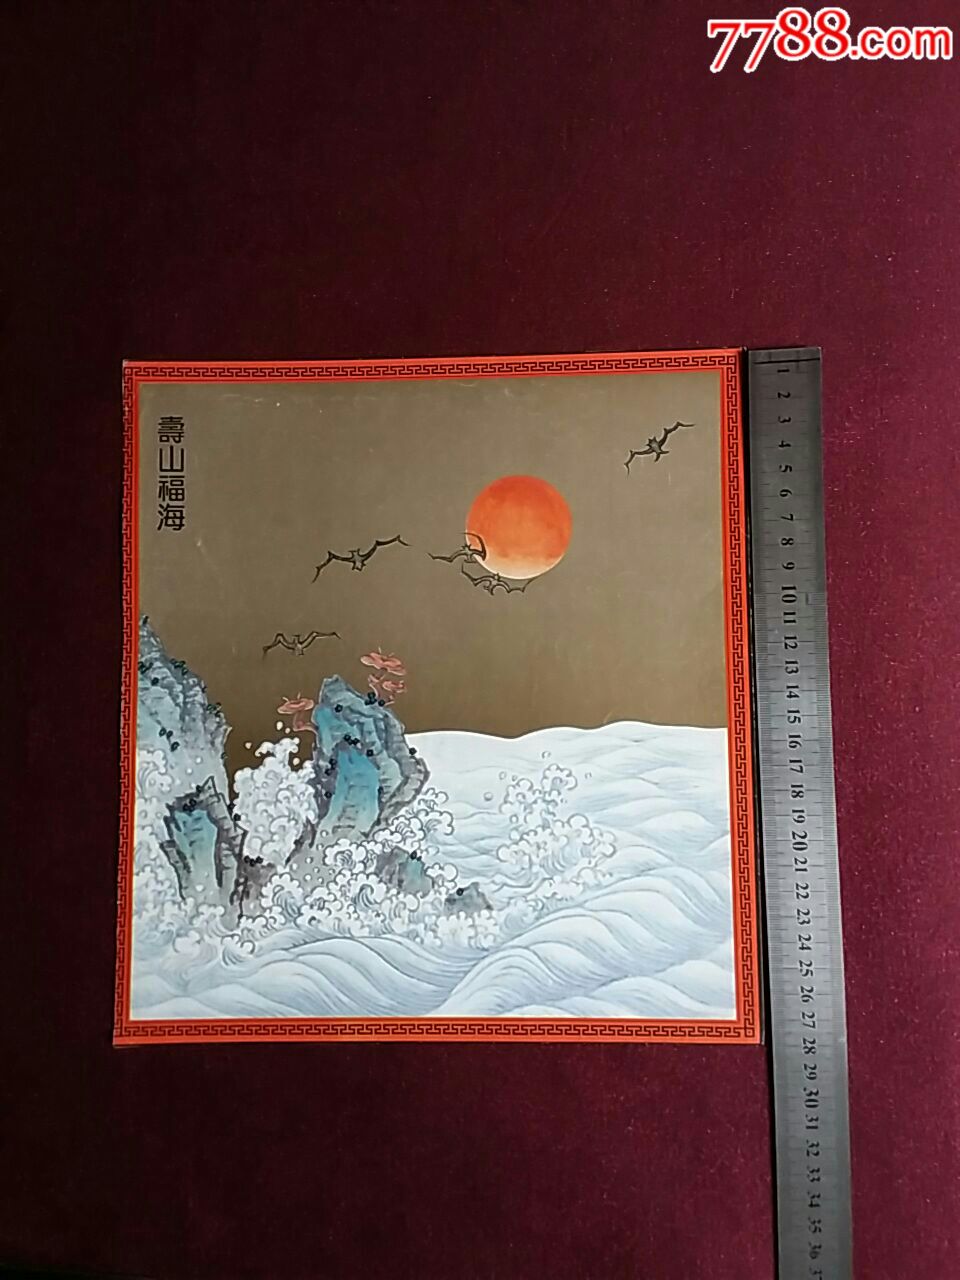 福山寿海纹样图片